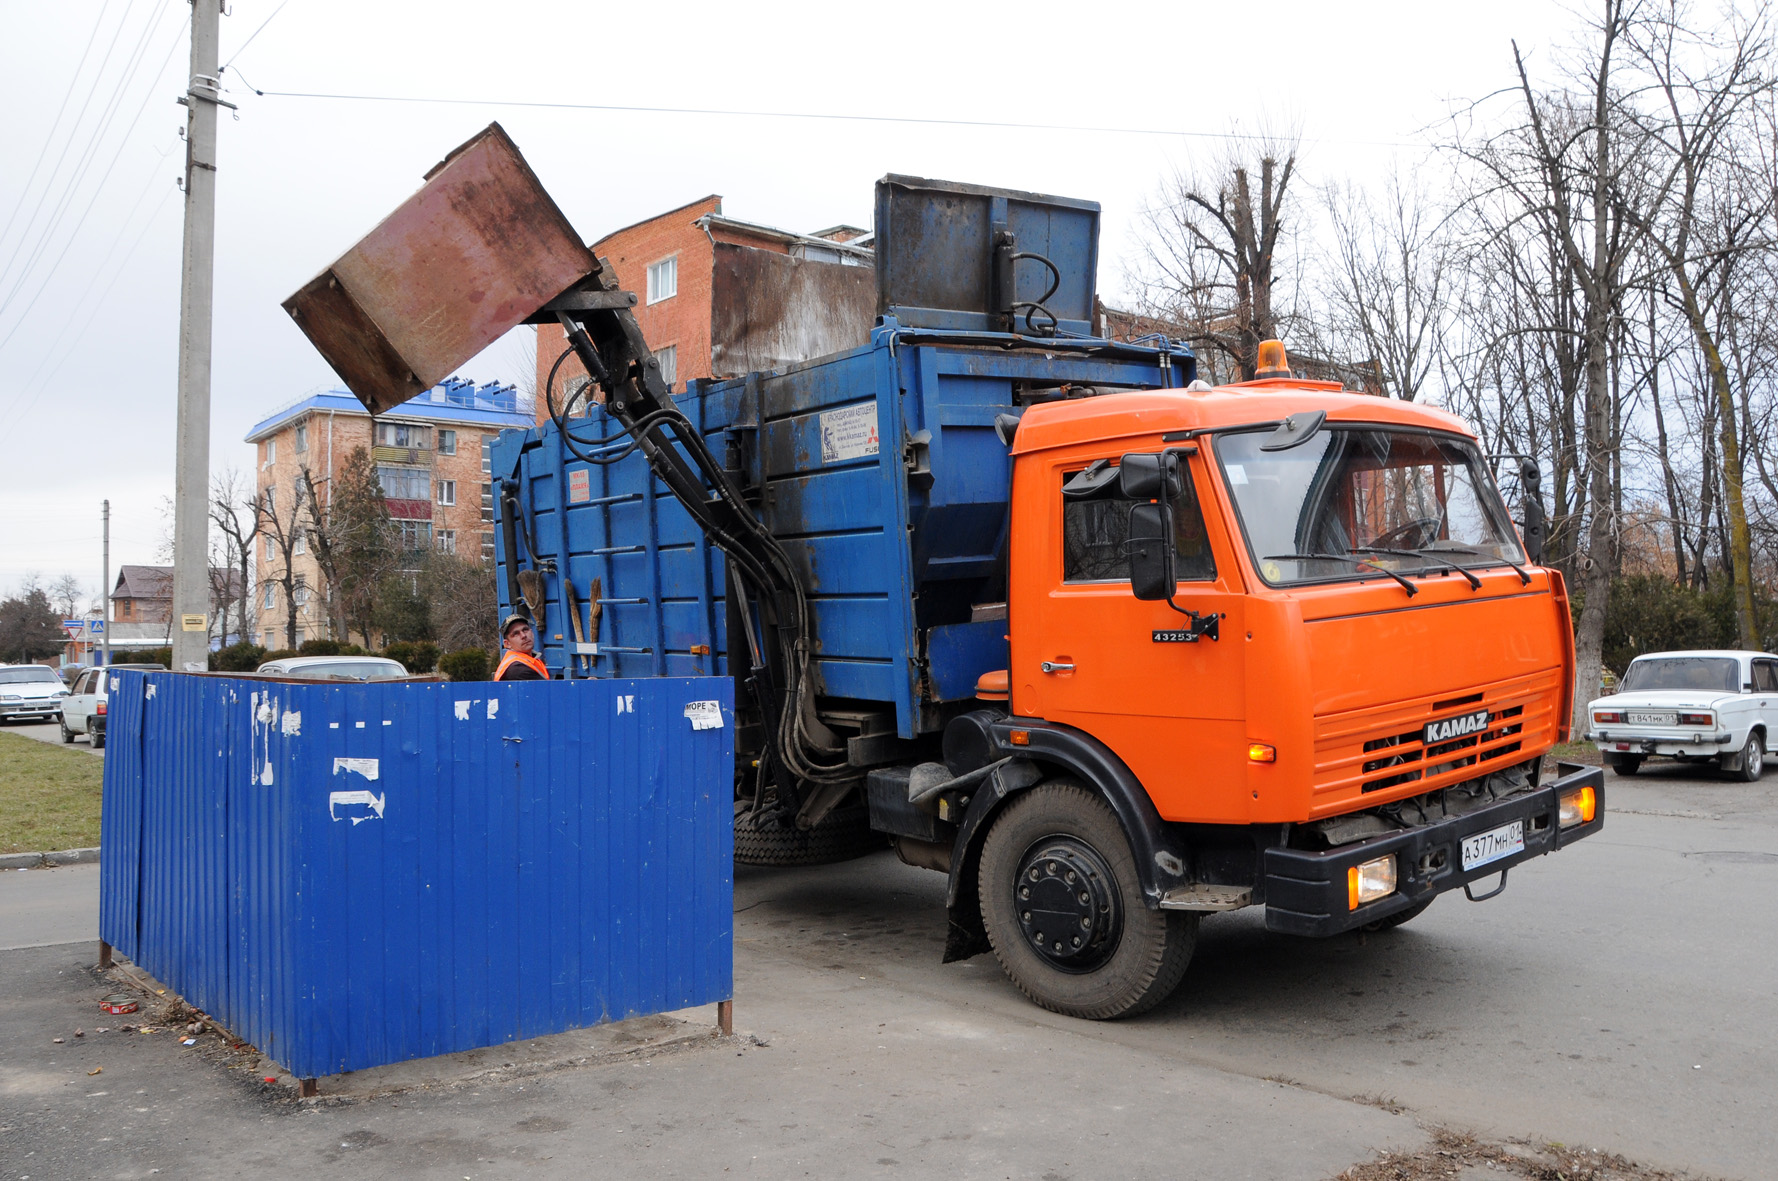 За раздельный сбор мусора россияне будут получать льготы по плате за жилищно-коммунальные услуги